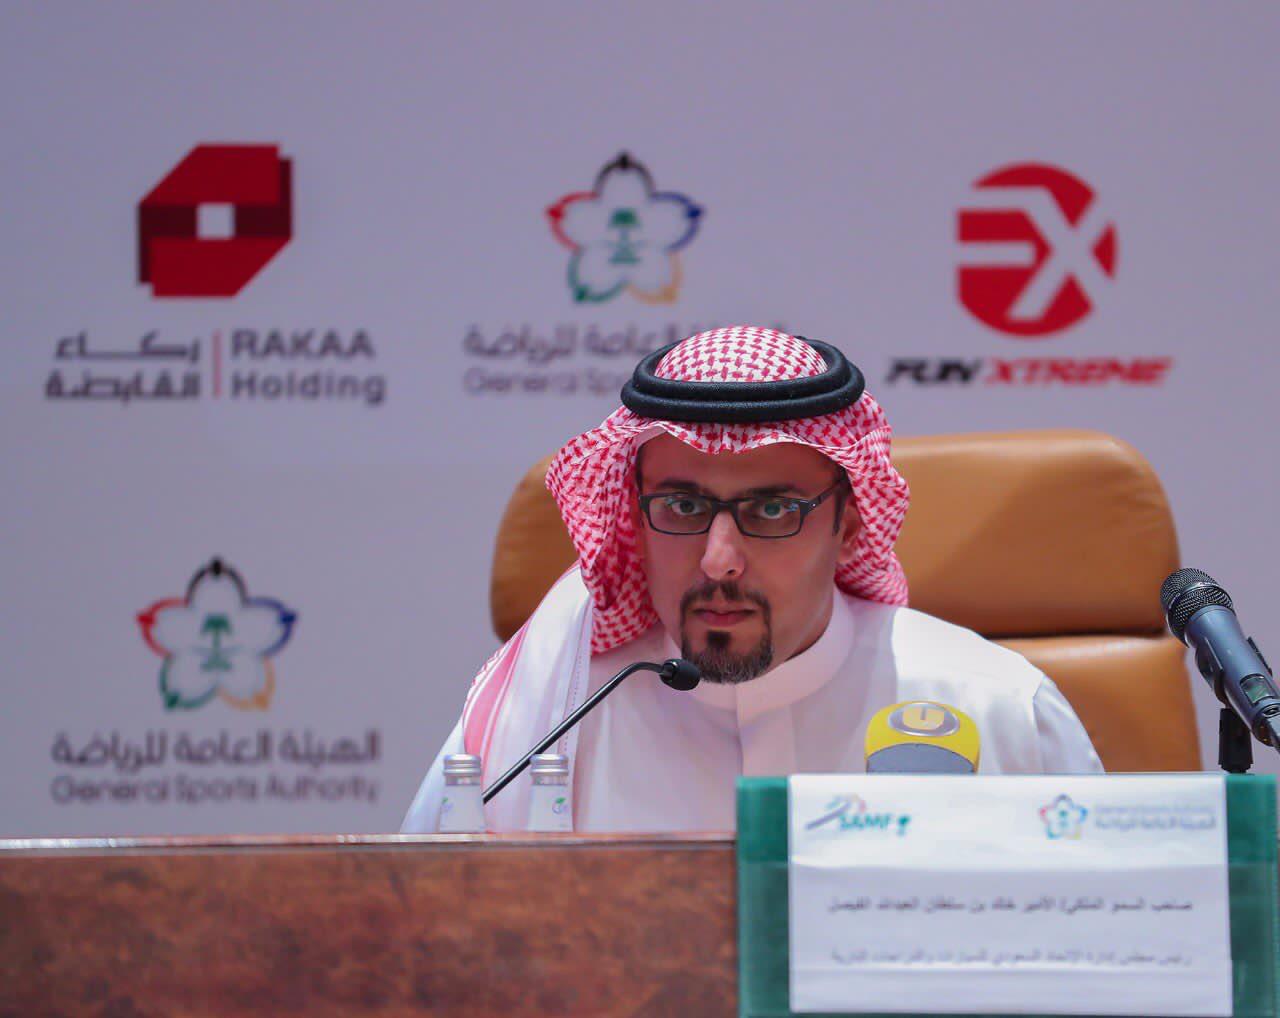 الإعلان عن موعد بطولة الإتحاد السعودي للكارتينج لعام 2019 5